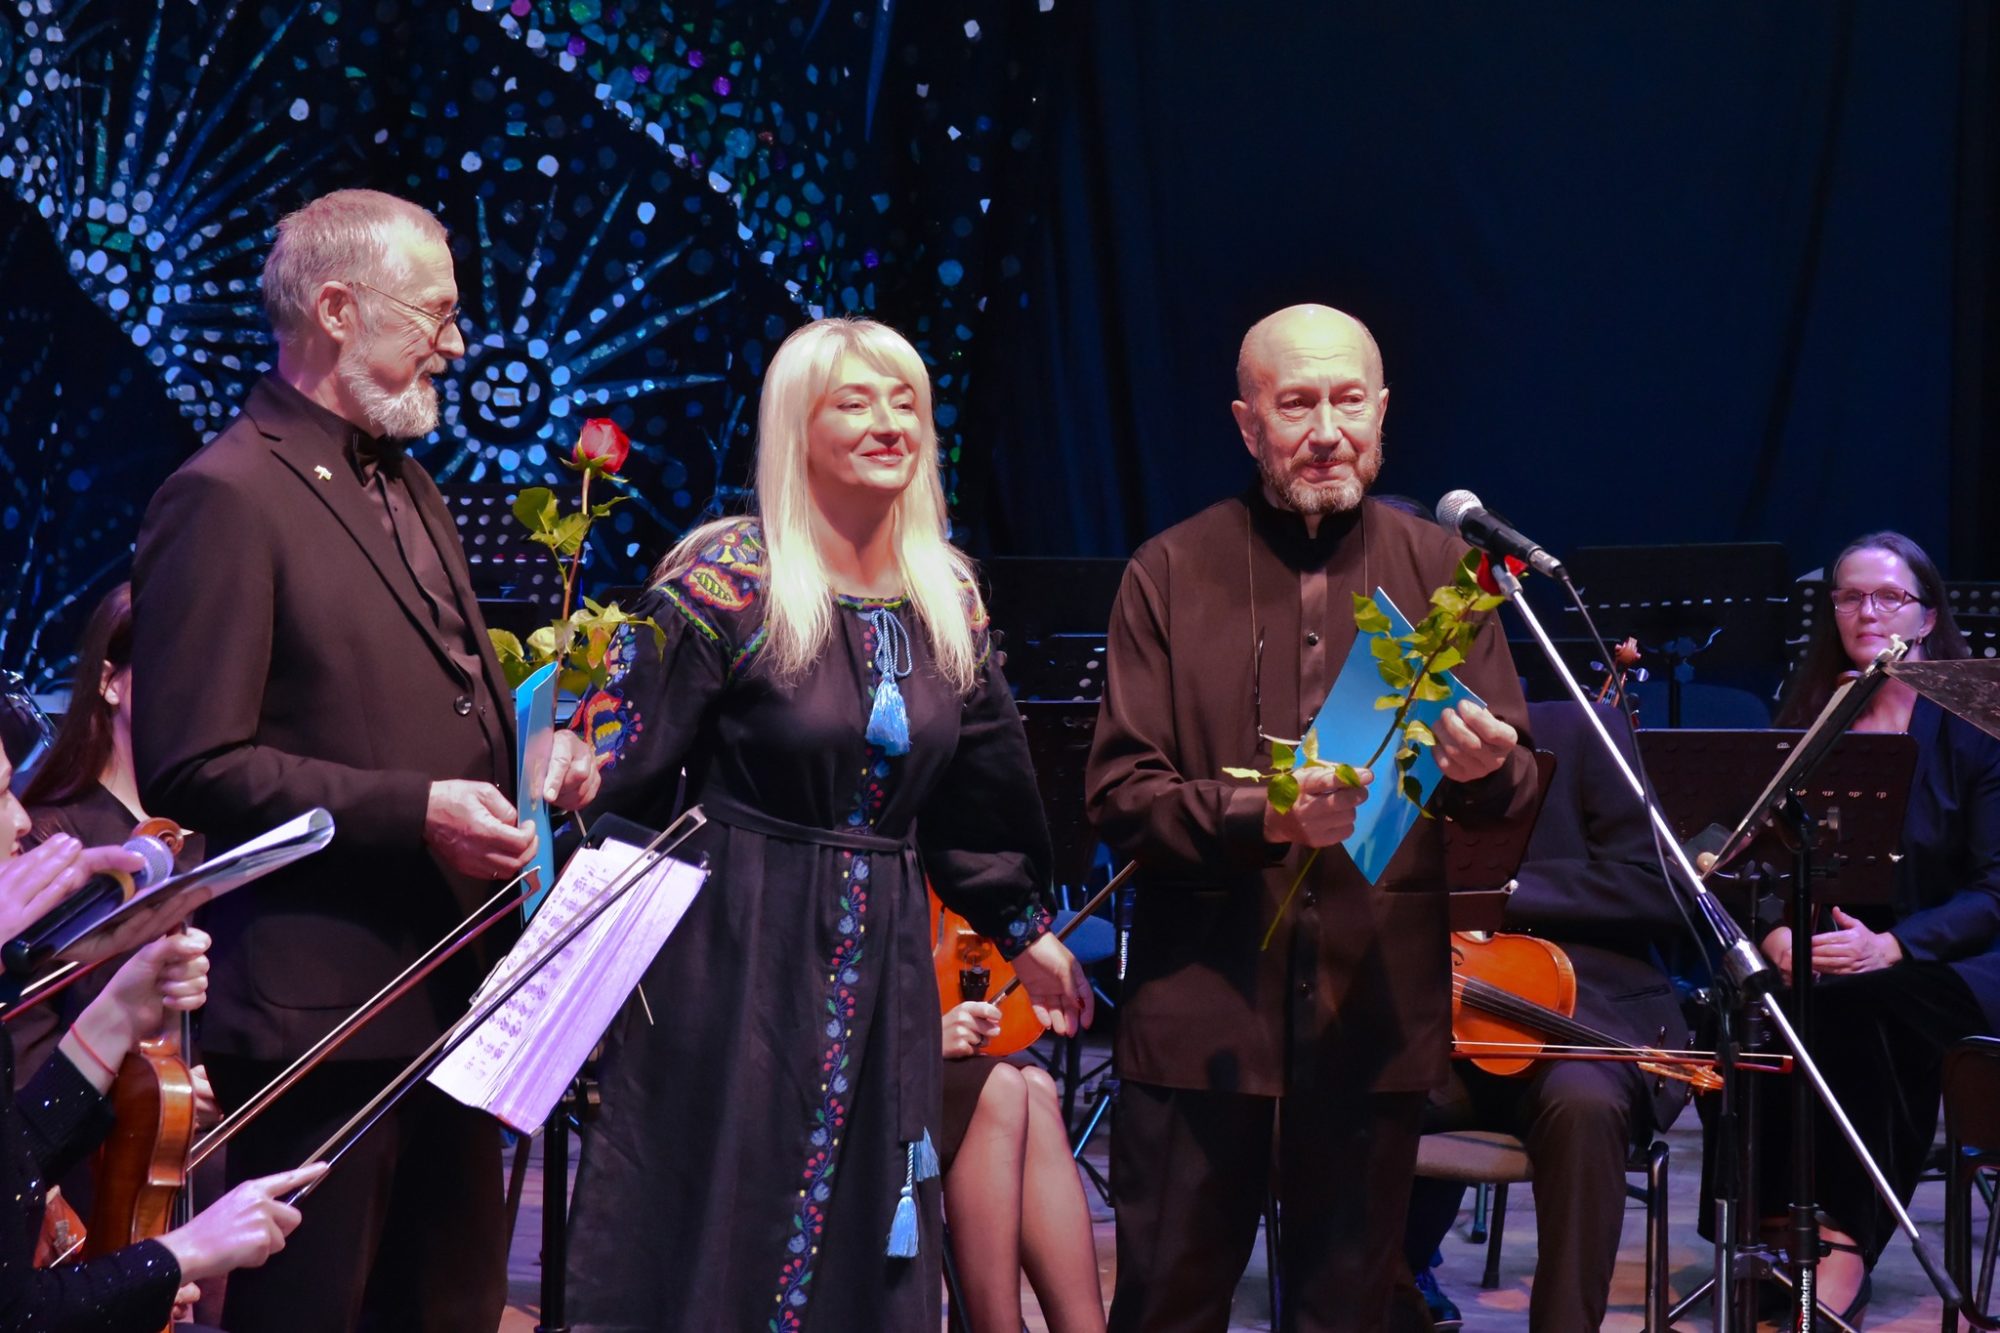 Mariupol Classic. Як музиканти маріупольської філармонії відроджують традиційний фестиваль в евакуації 5